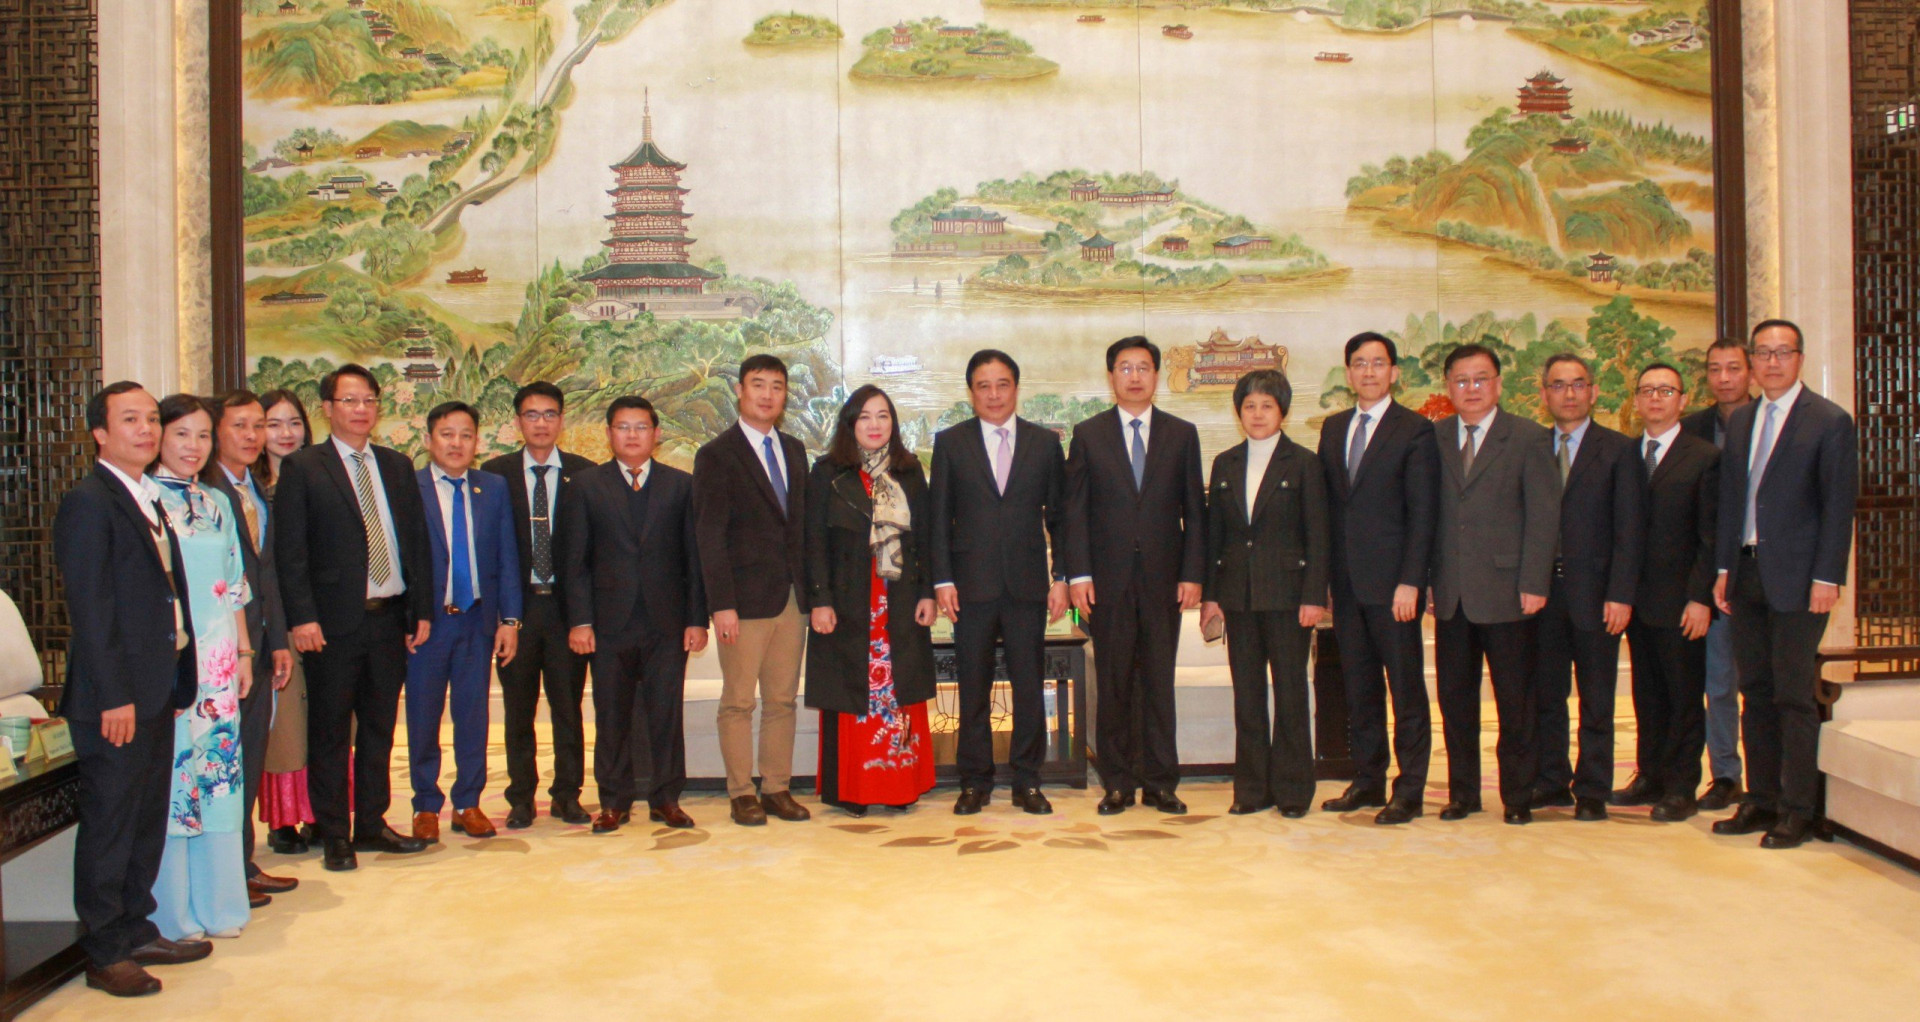 Đoàn công tác của tỉnh Khánh Hòa chụp hình lưu niệm với lãnh đạo tỉnh Chiết Giang.